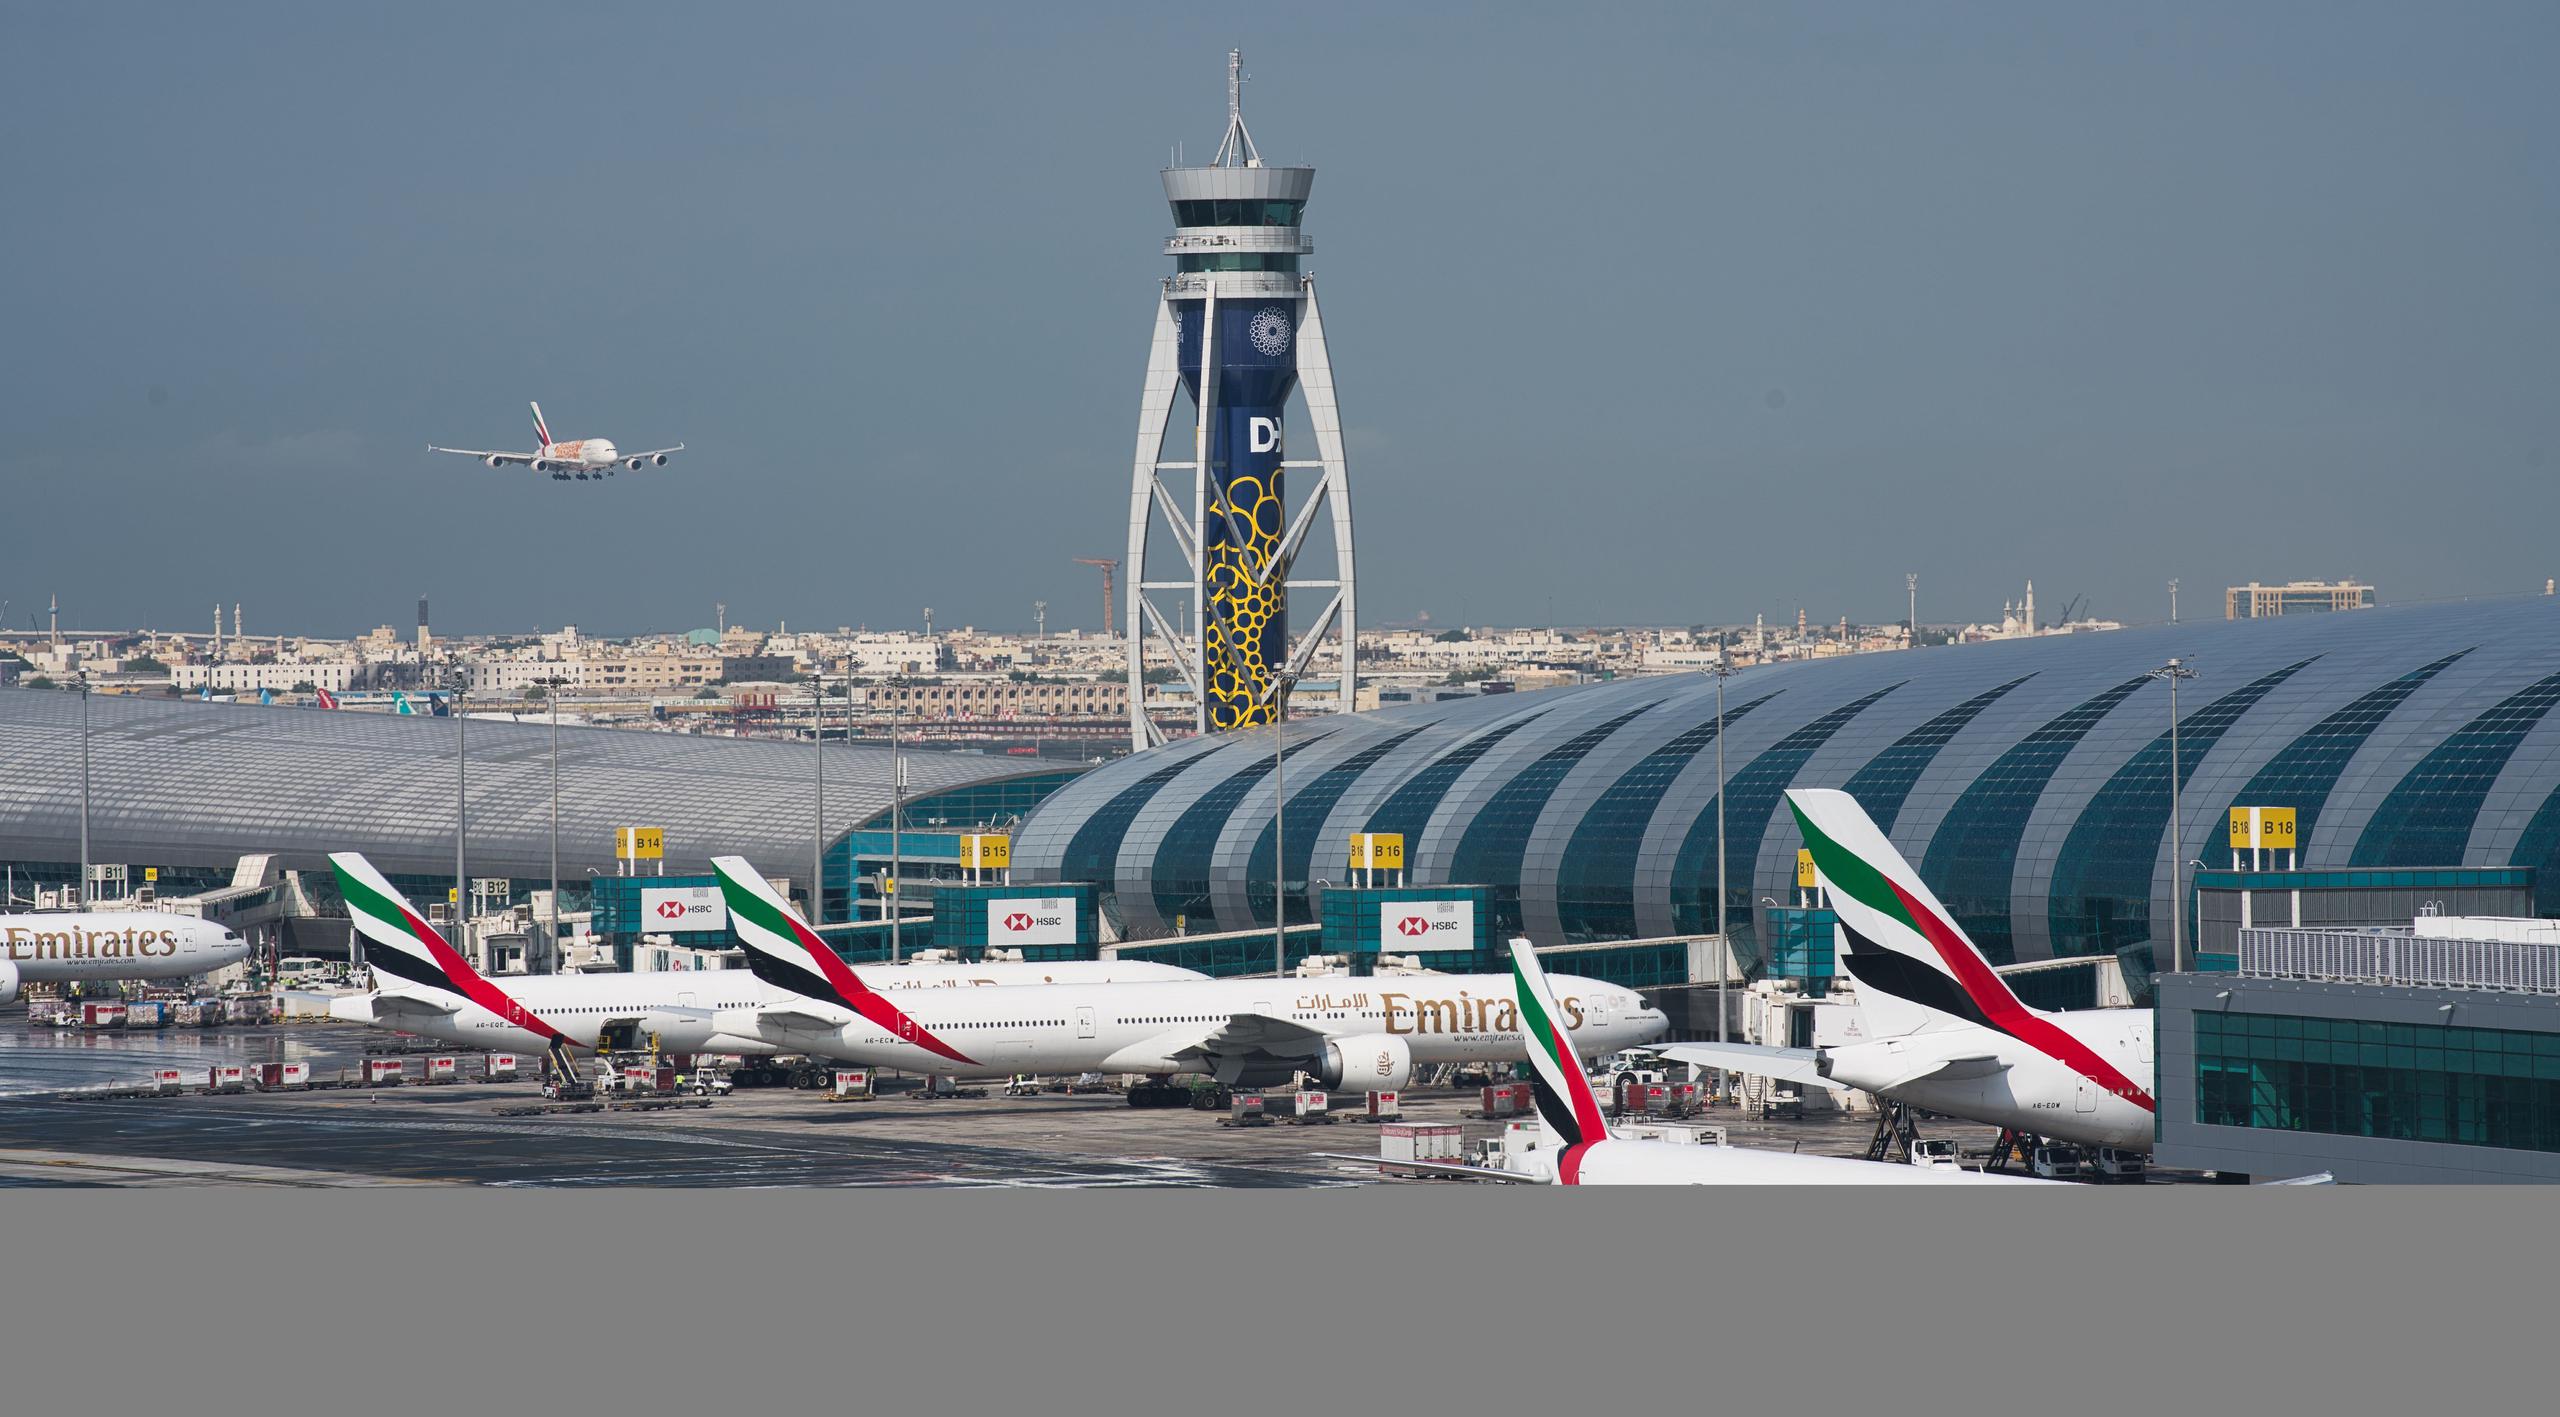 ARCHIVO - Un avión de pasajeros de Emirates aterriza en el Aeropuerto Internacional de Dubai en Dubai, Emiratos Árabes Unidos, el 11 de diciembre de 2019. Aerolíneas de todo el mundo, incluida la aerolínea de larga distancia Emirates, se apresuraron el miércoles 19 de enero de 2022 a cancelar o cambiar los vuelos que se dirigen a los EE. UU. debido a una disputa en curso sobre el despliegue de la tecnología de telefonía móvil 5G cerca de los aeropuertos estadounidenses. (Foto AP/Jon Gambrell, archivo)